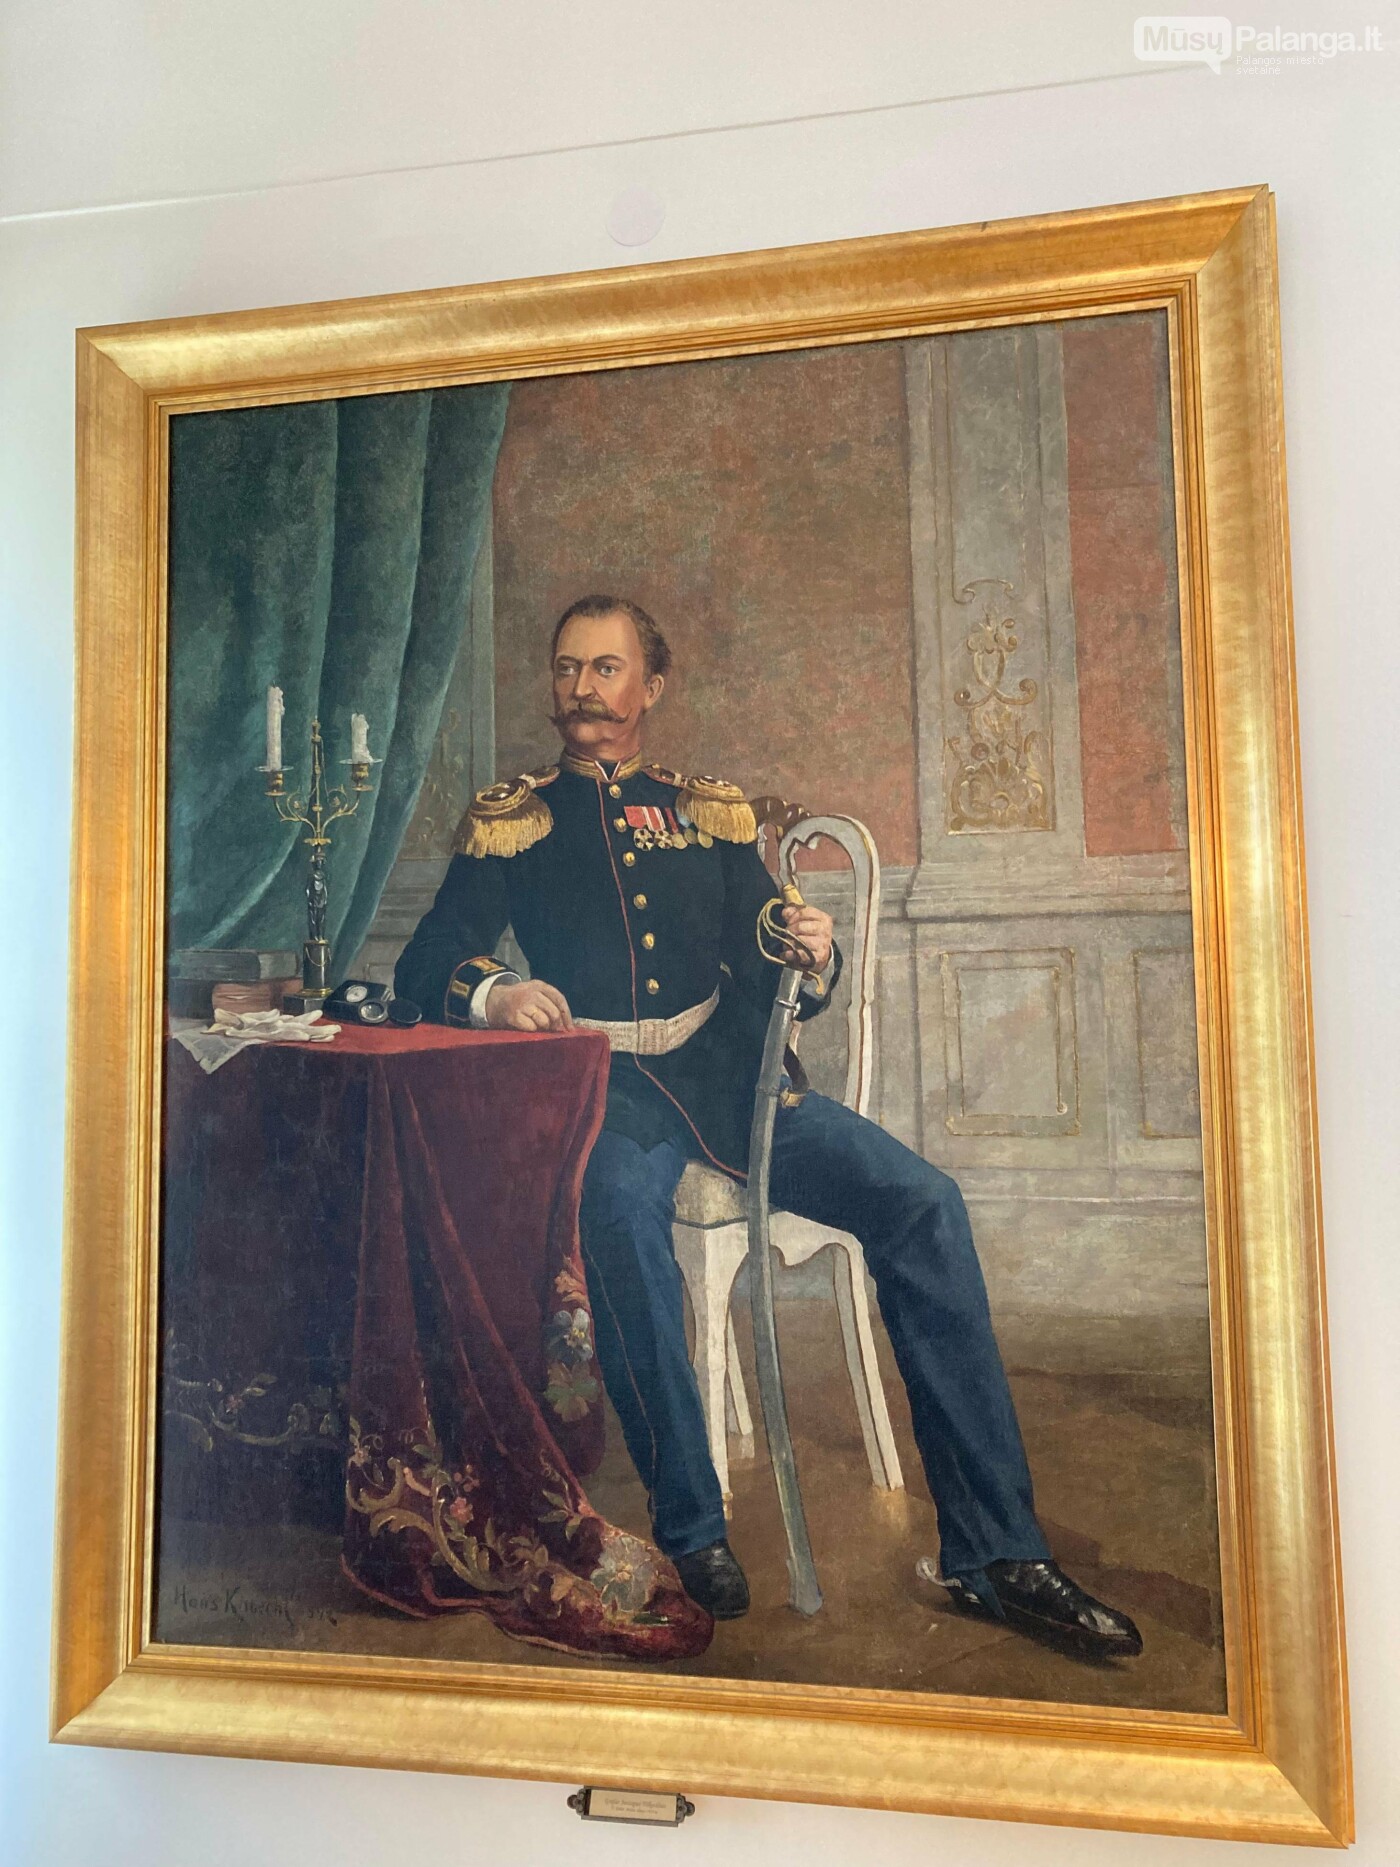 Grafo Juozapo Tiškevičiaus 1892 m. jau po jo mirties dailininko N. Kohet nutapytas portretas saugomas Kretingos muziejuje.